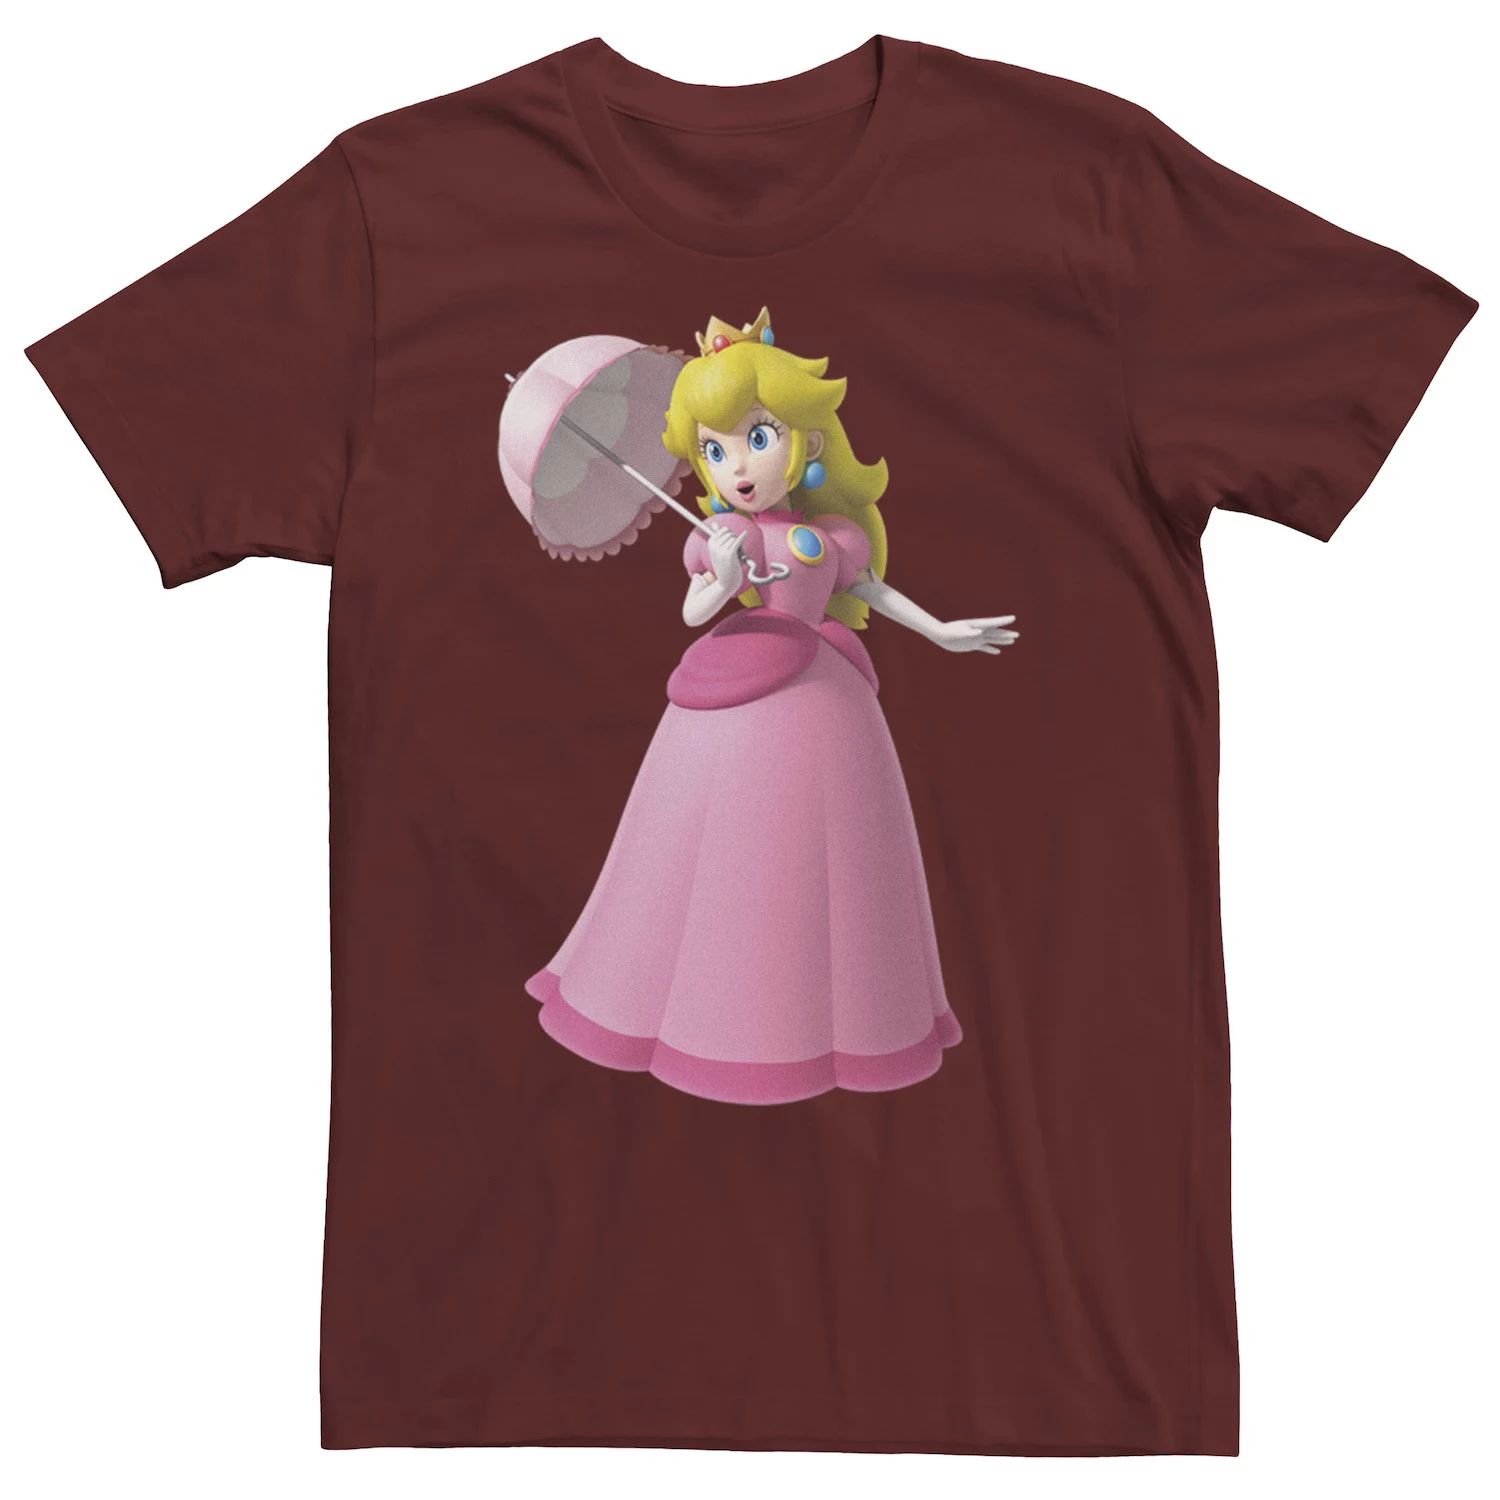 цена Мужская футболка Nintendo Princess с персиковым портретом Licensed Character